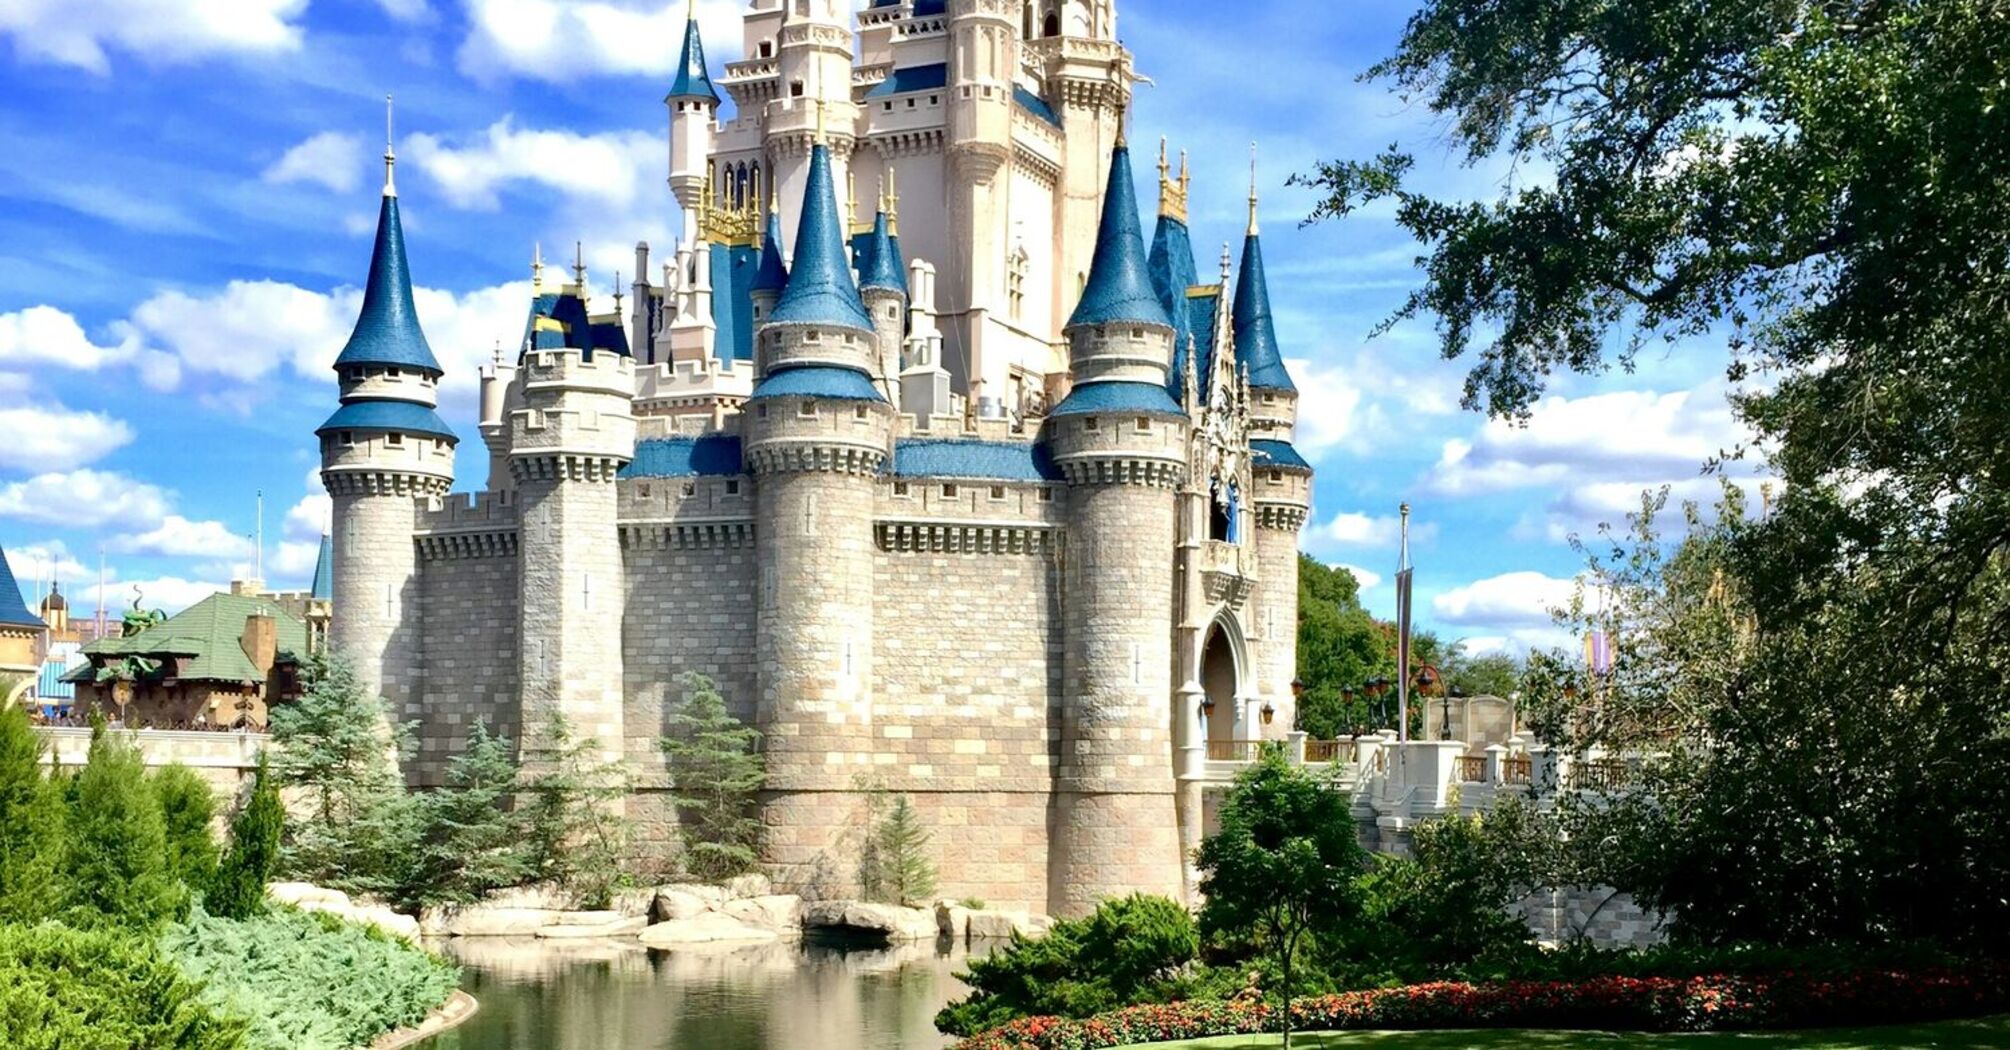 Cinderella Castle at Walt Disney World on a clear day